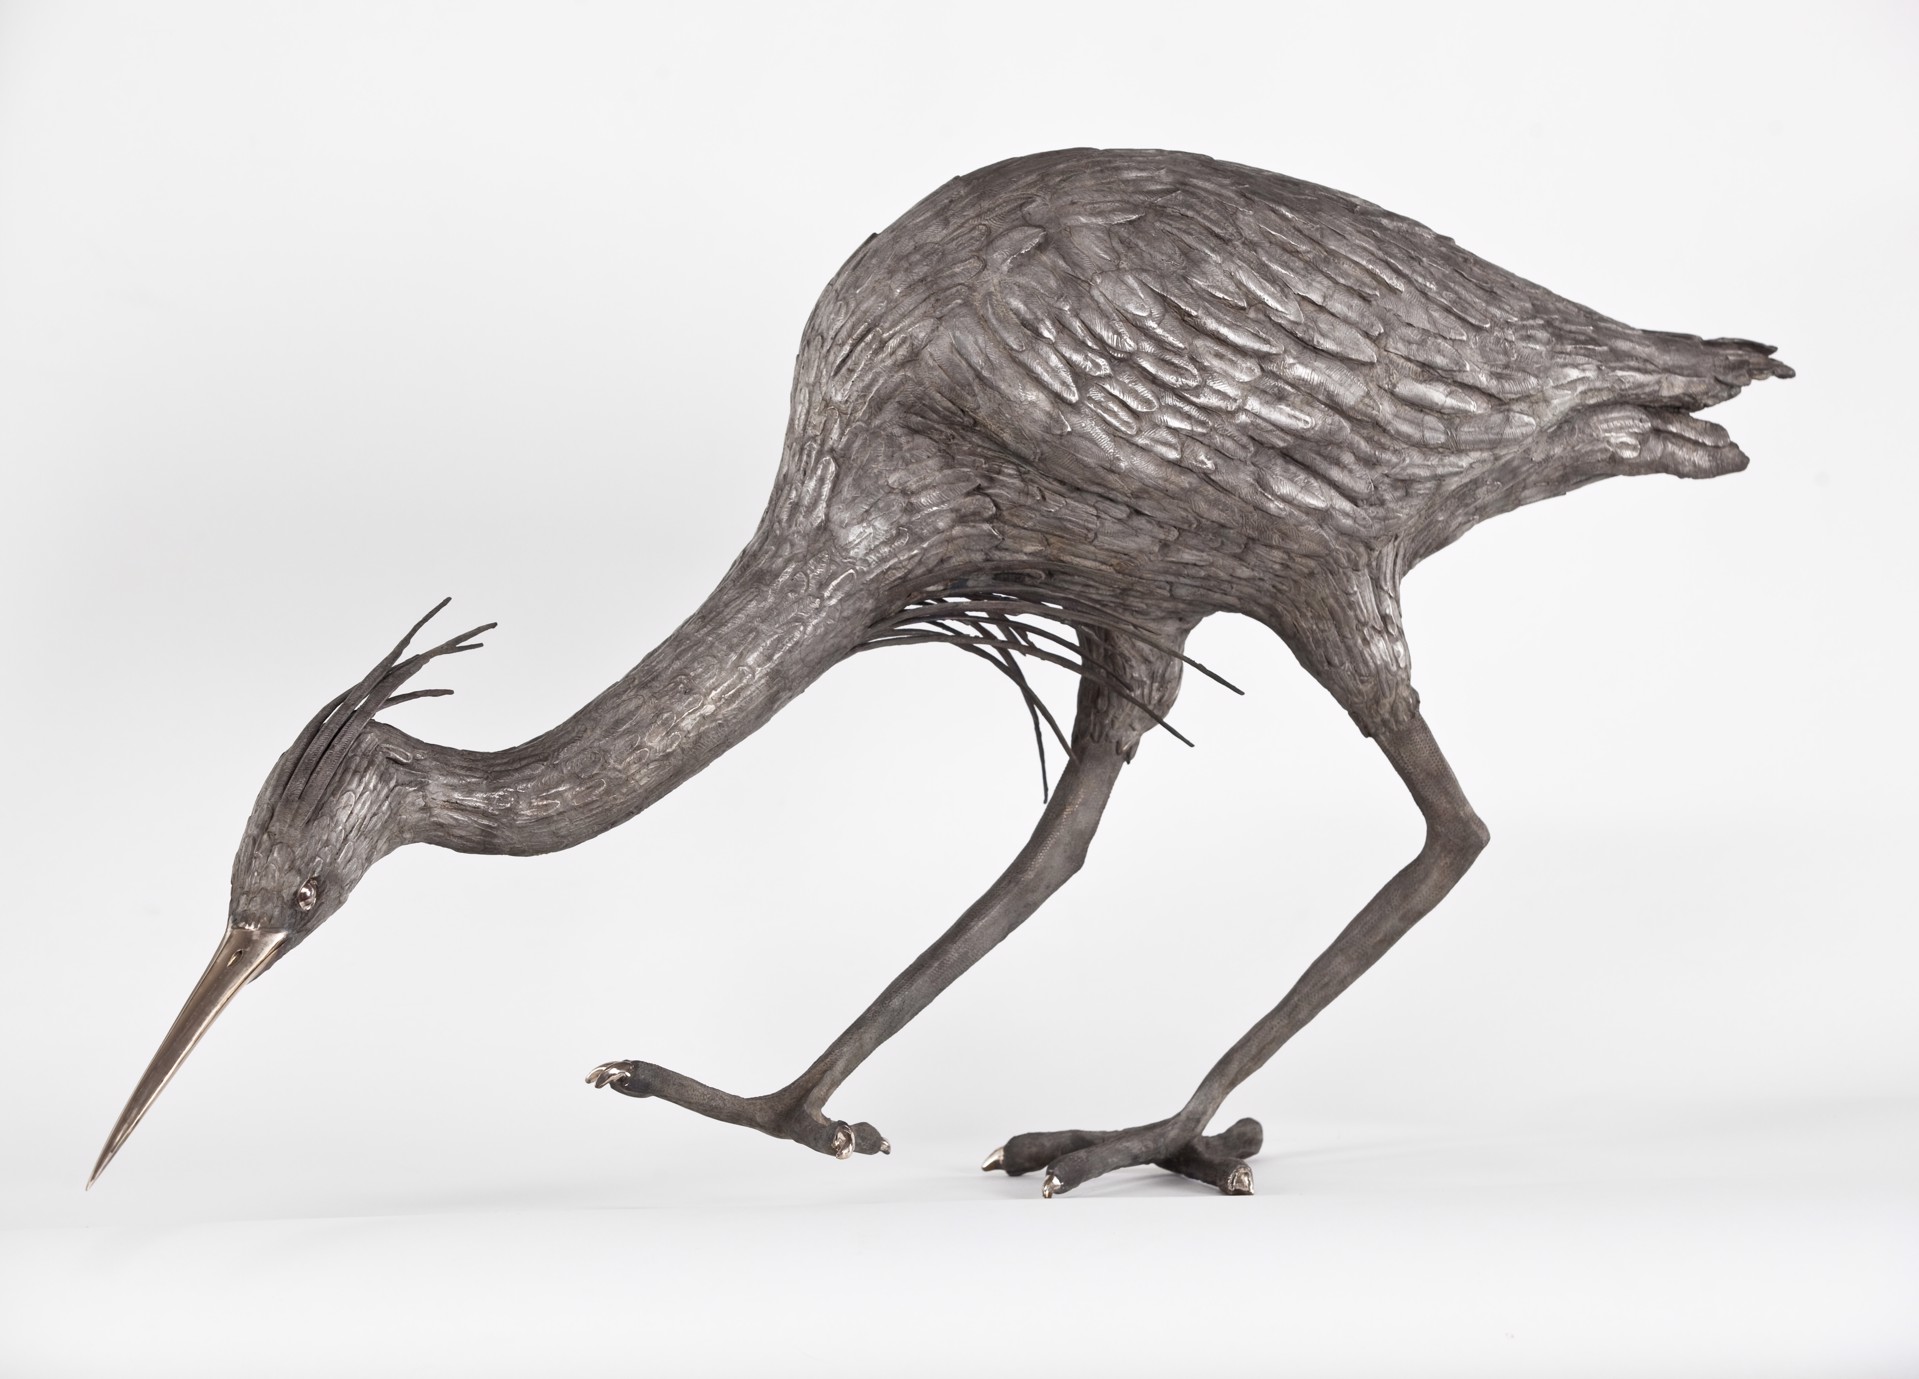 Stalking Heron by Andreas von Huene